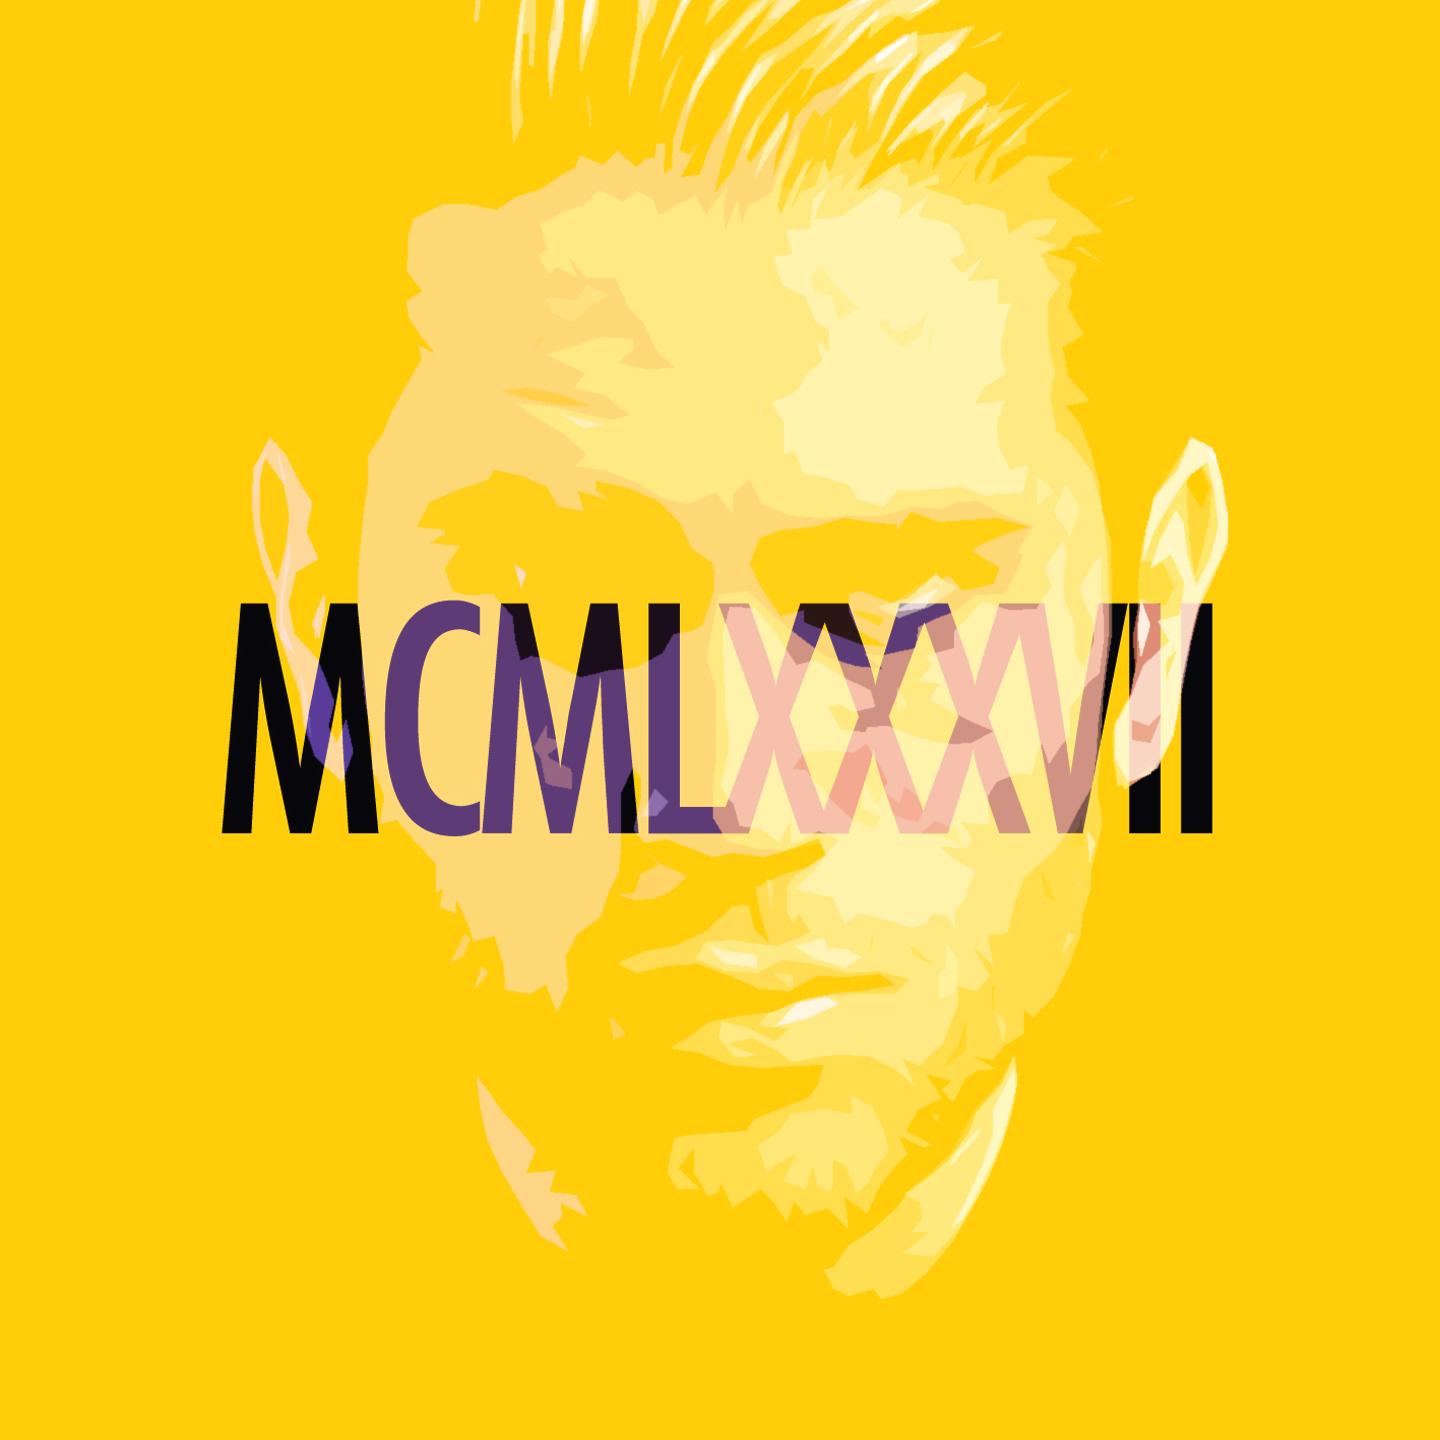 MCMLXXXVII